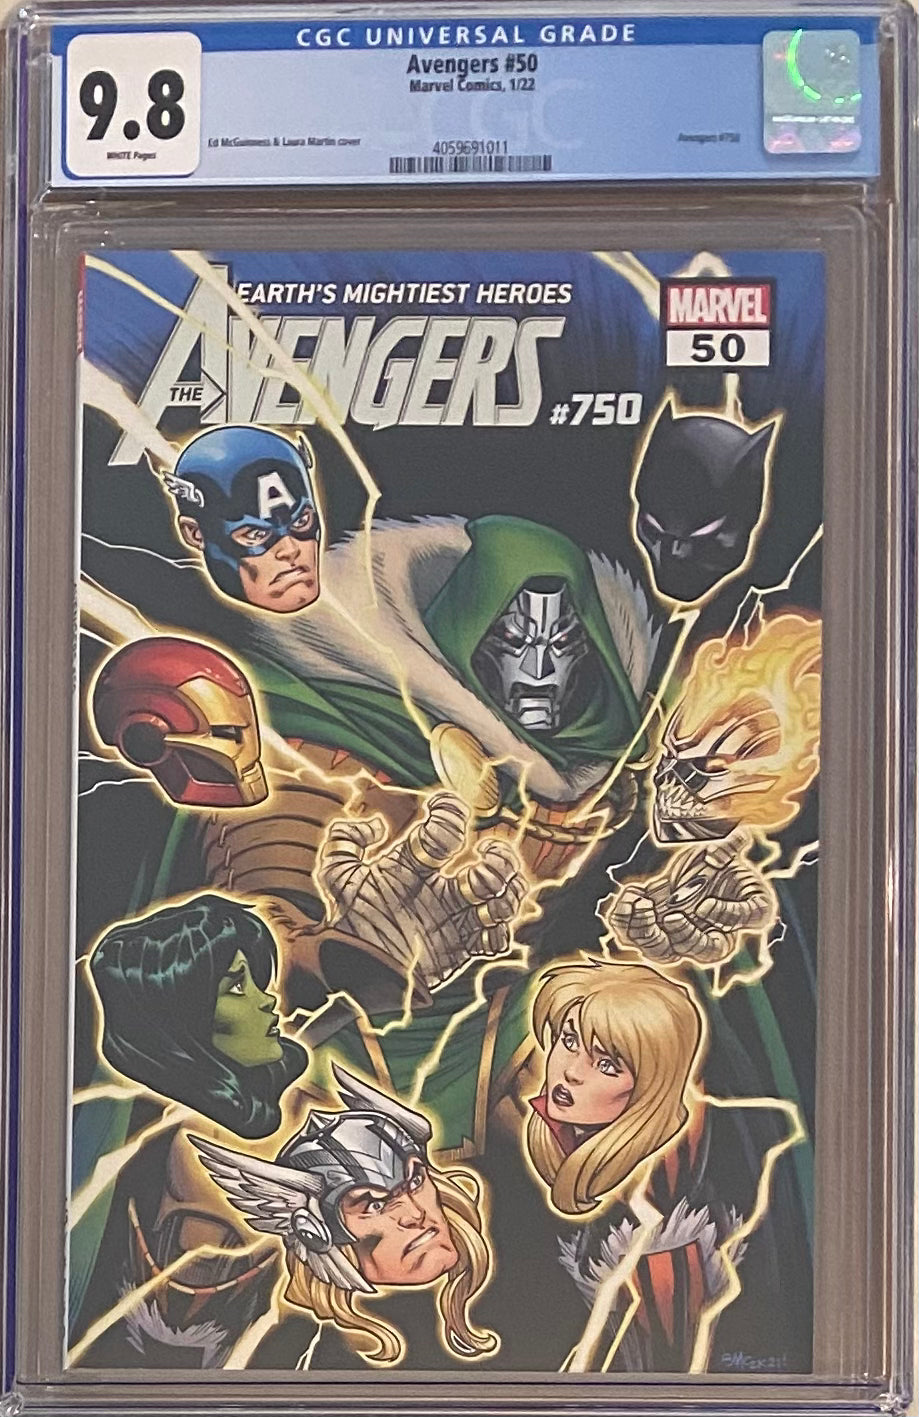 Avengers #50 (#750) CGC 9.8